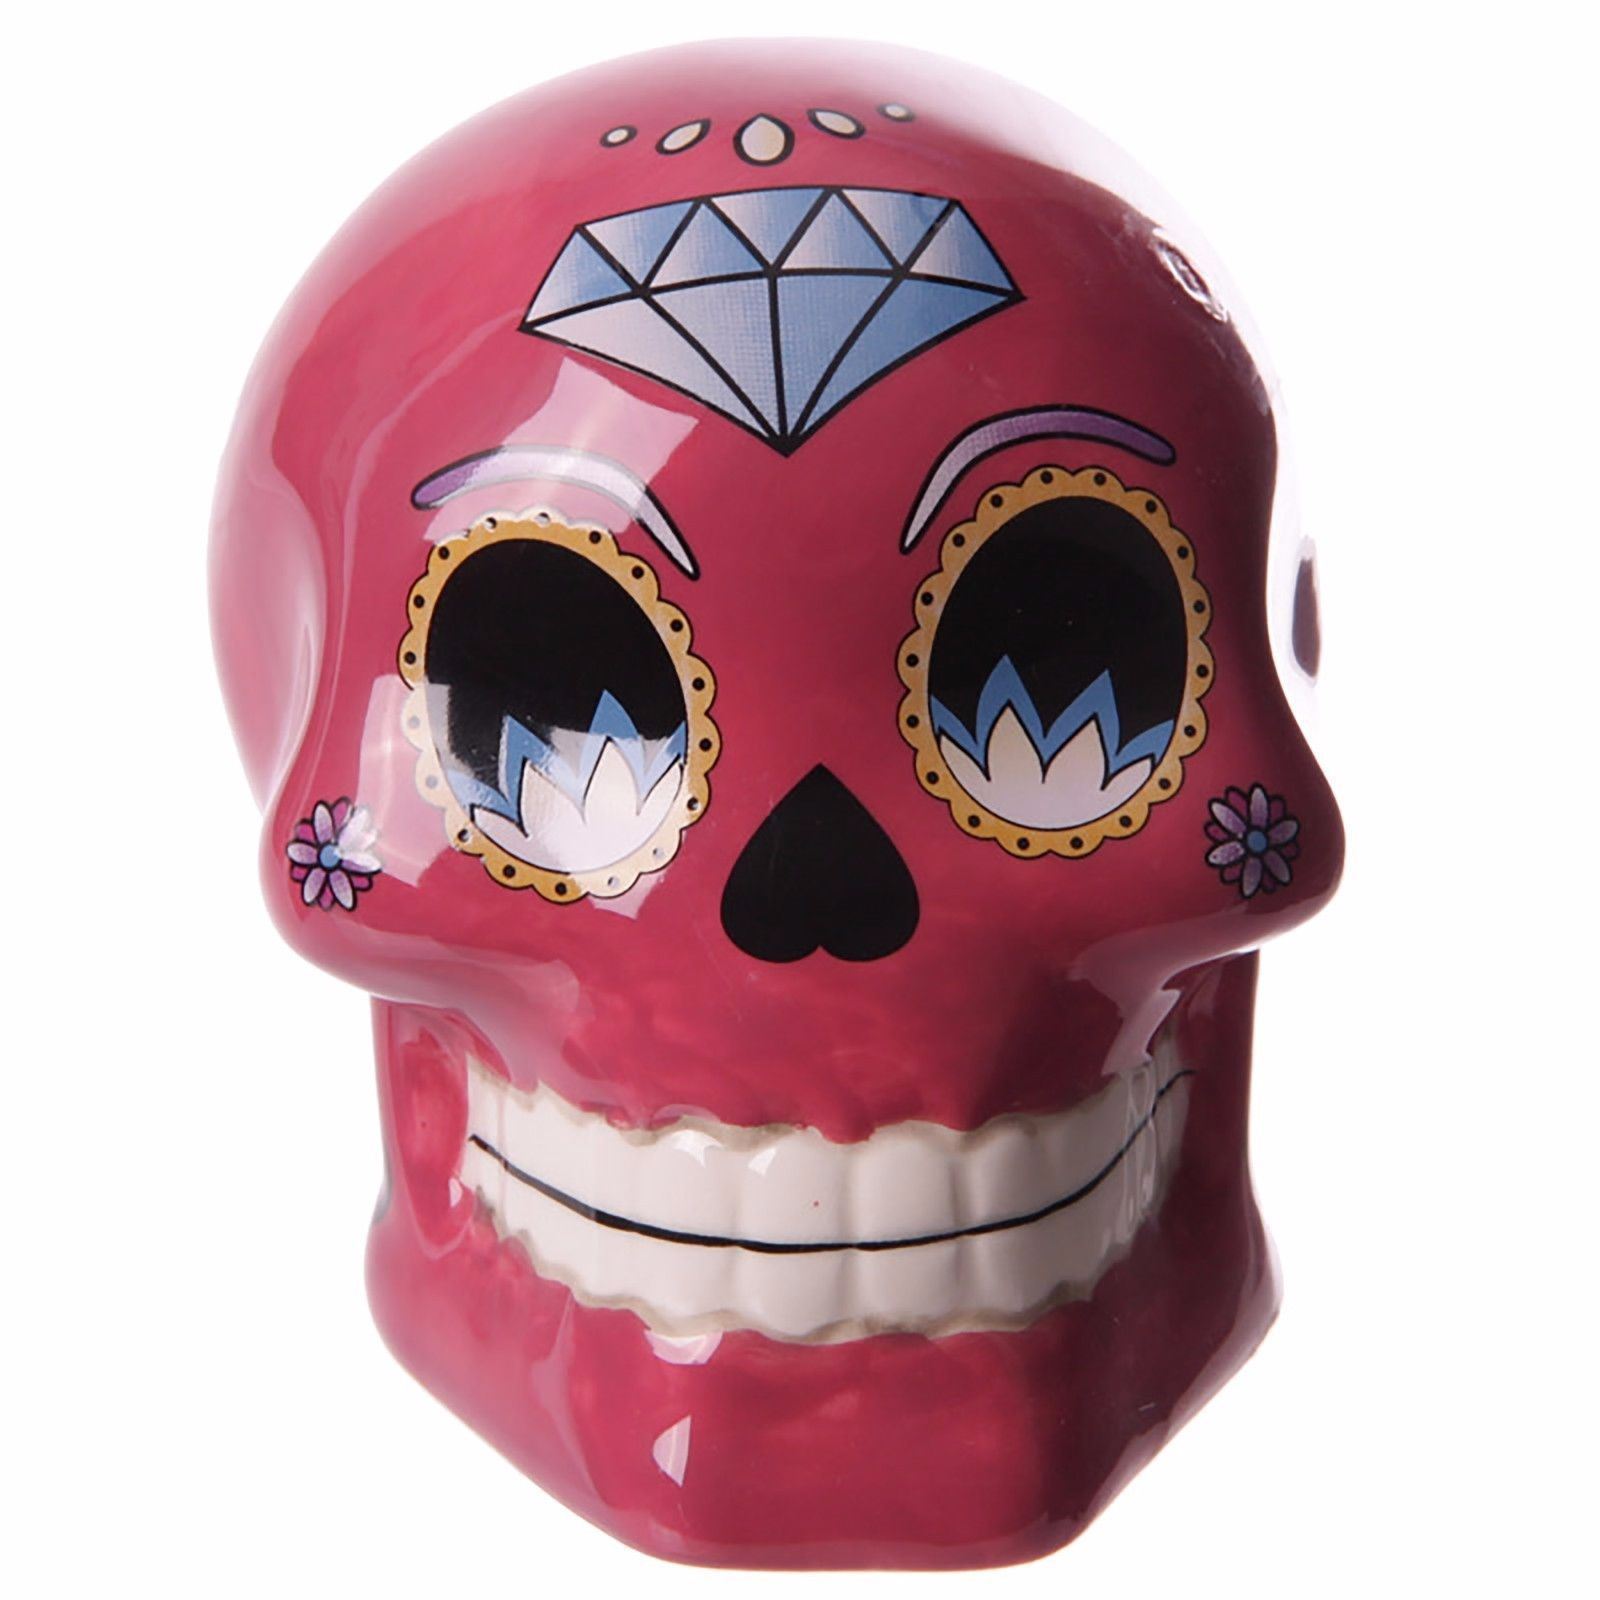 Tirelire crâne jour des morts mexicain petit modèle rose lulu shop 2